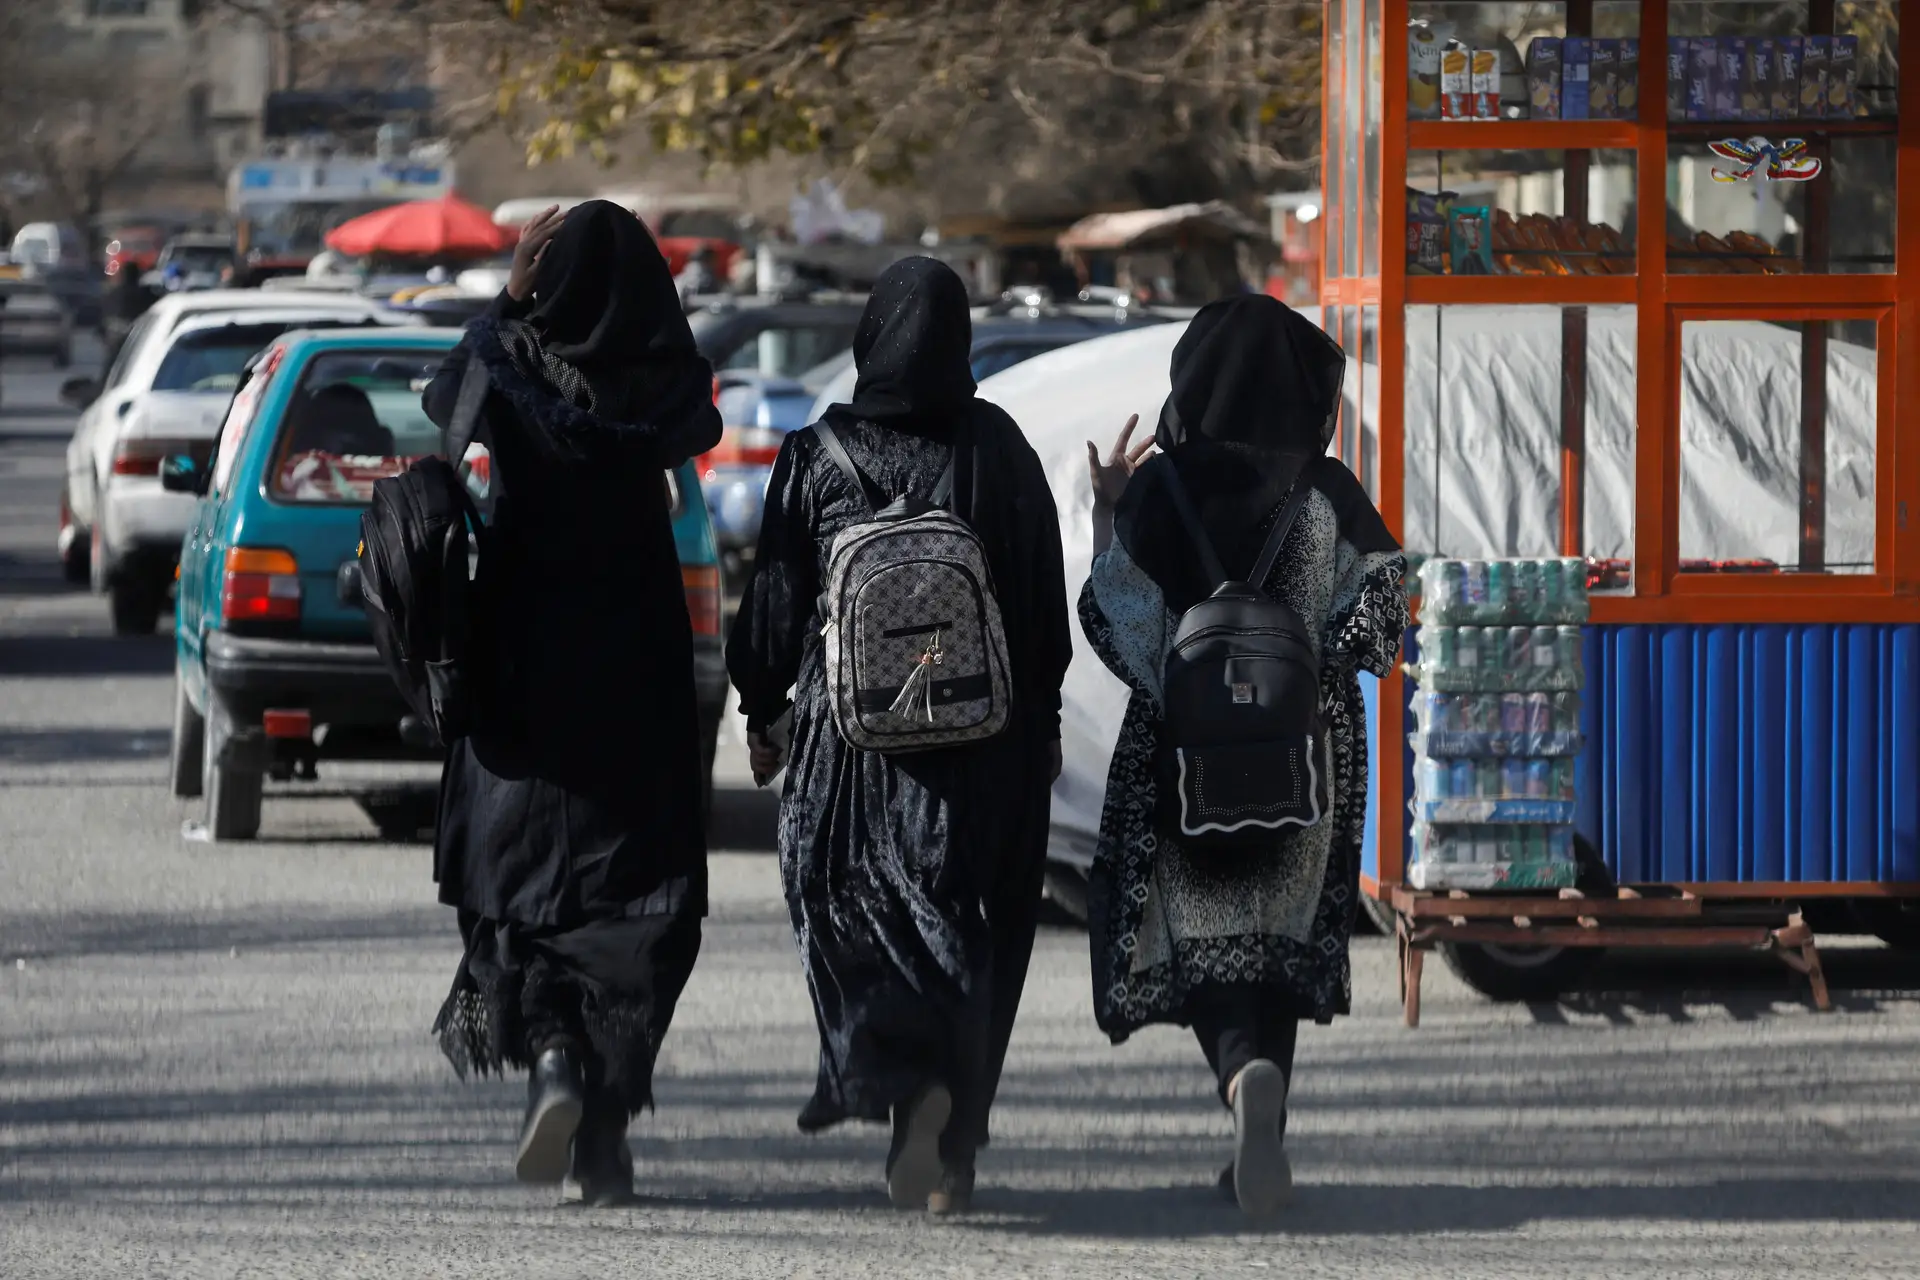 Afeganistão: Portugal "condena veementemente" decisão dos talibãs em proibir mulheres em ONG